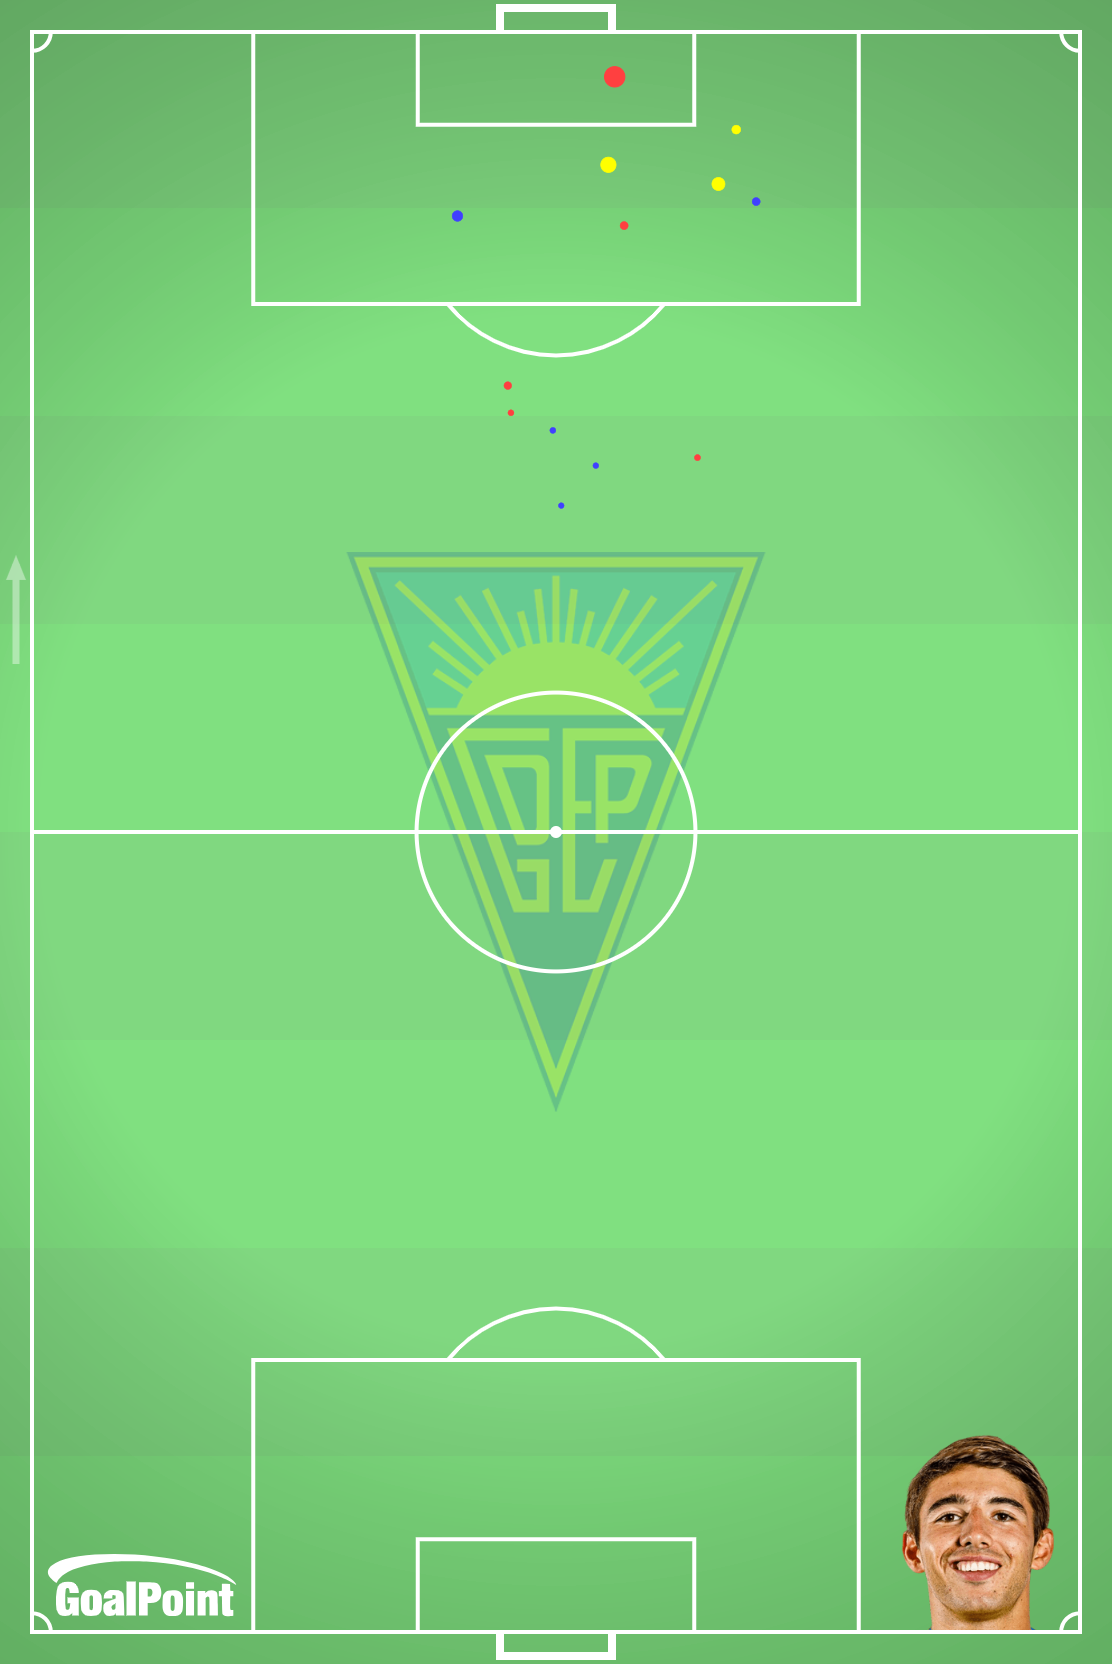 GoalPoint-João-Marques-Estoril-Remates-xG-Primeira-Liga-202324